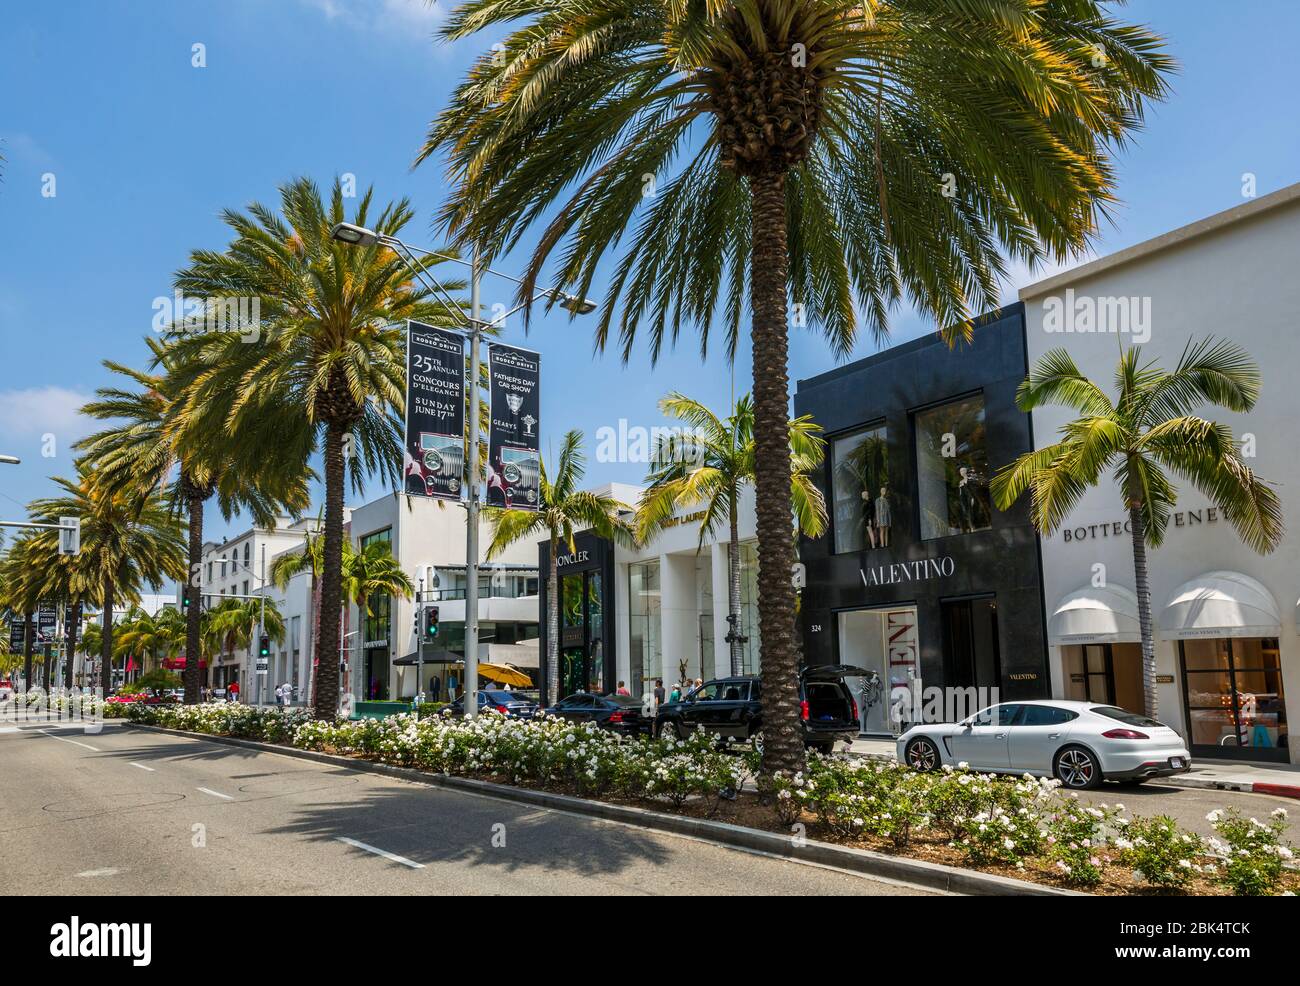 Blick auf Geschäfte auf Rodeo Drive, Beverley Hills, Los Angeles, Kalifornien, Vereinigte Staaten von Amerika, Nordamerika Stockfoto